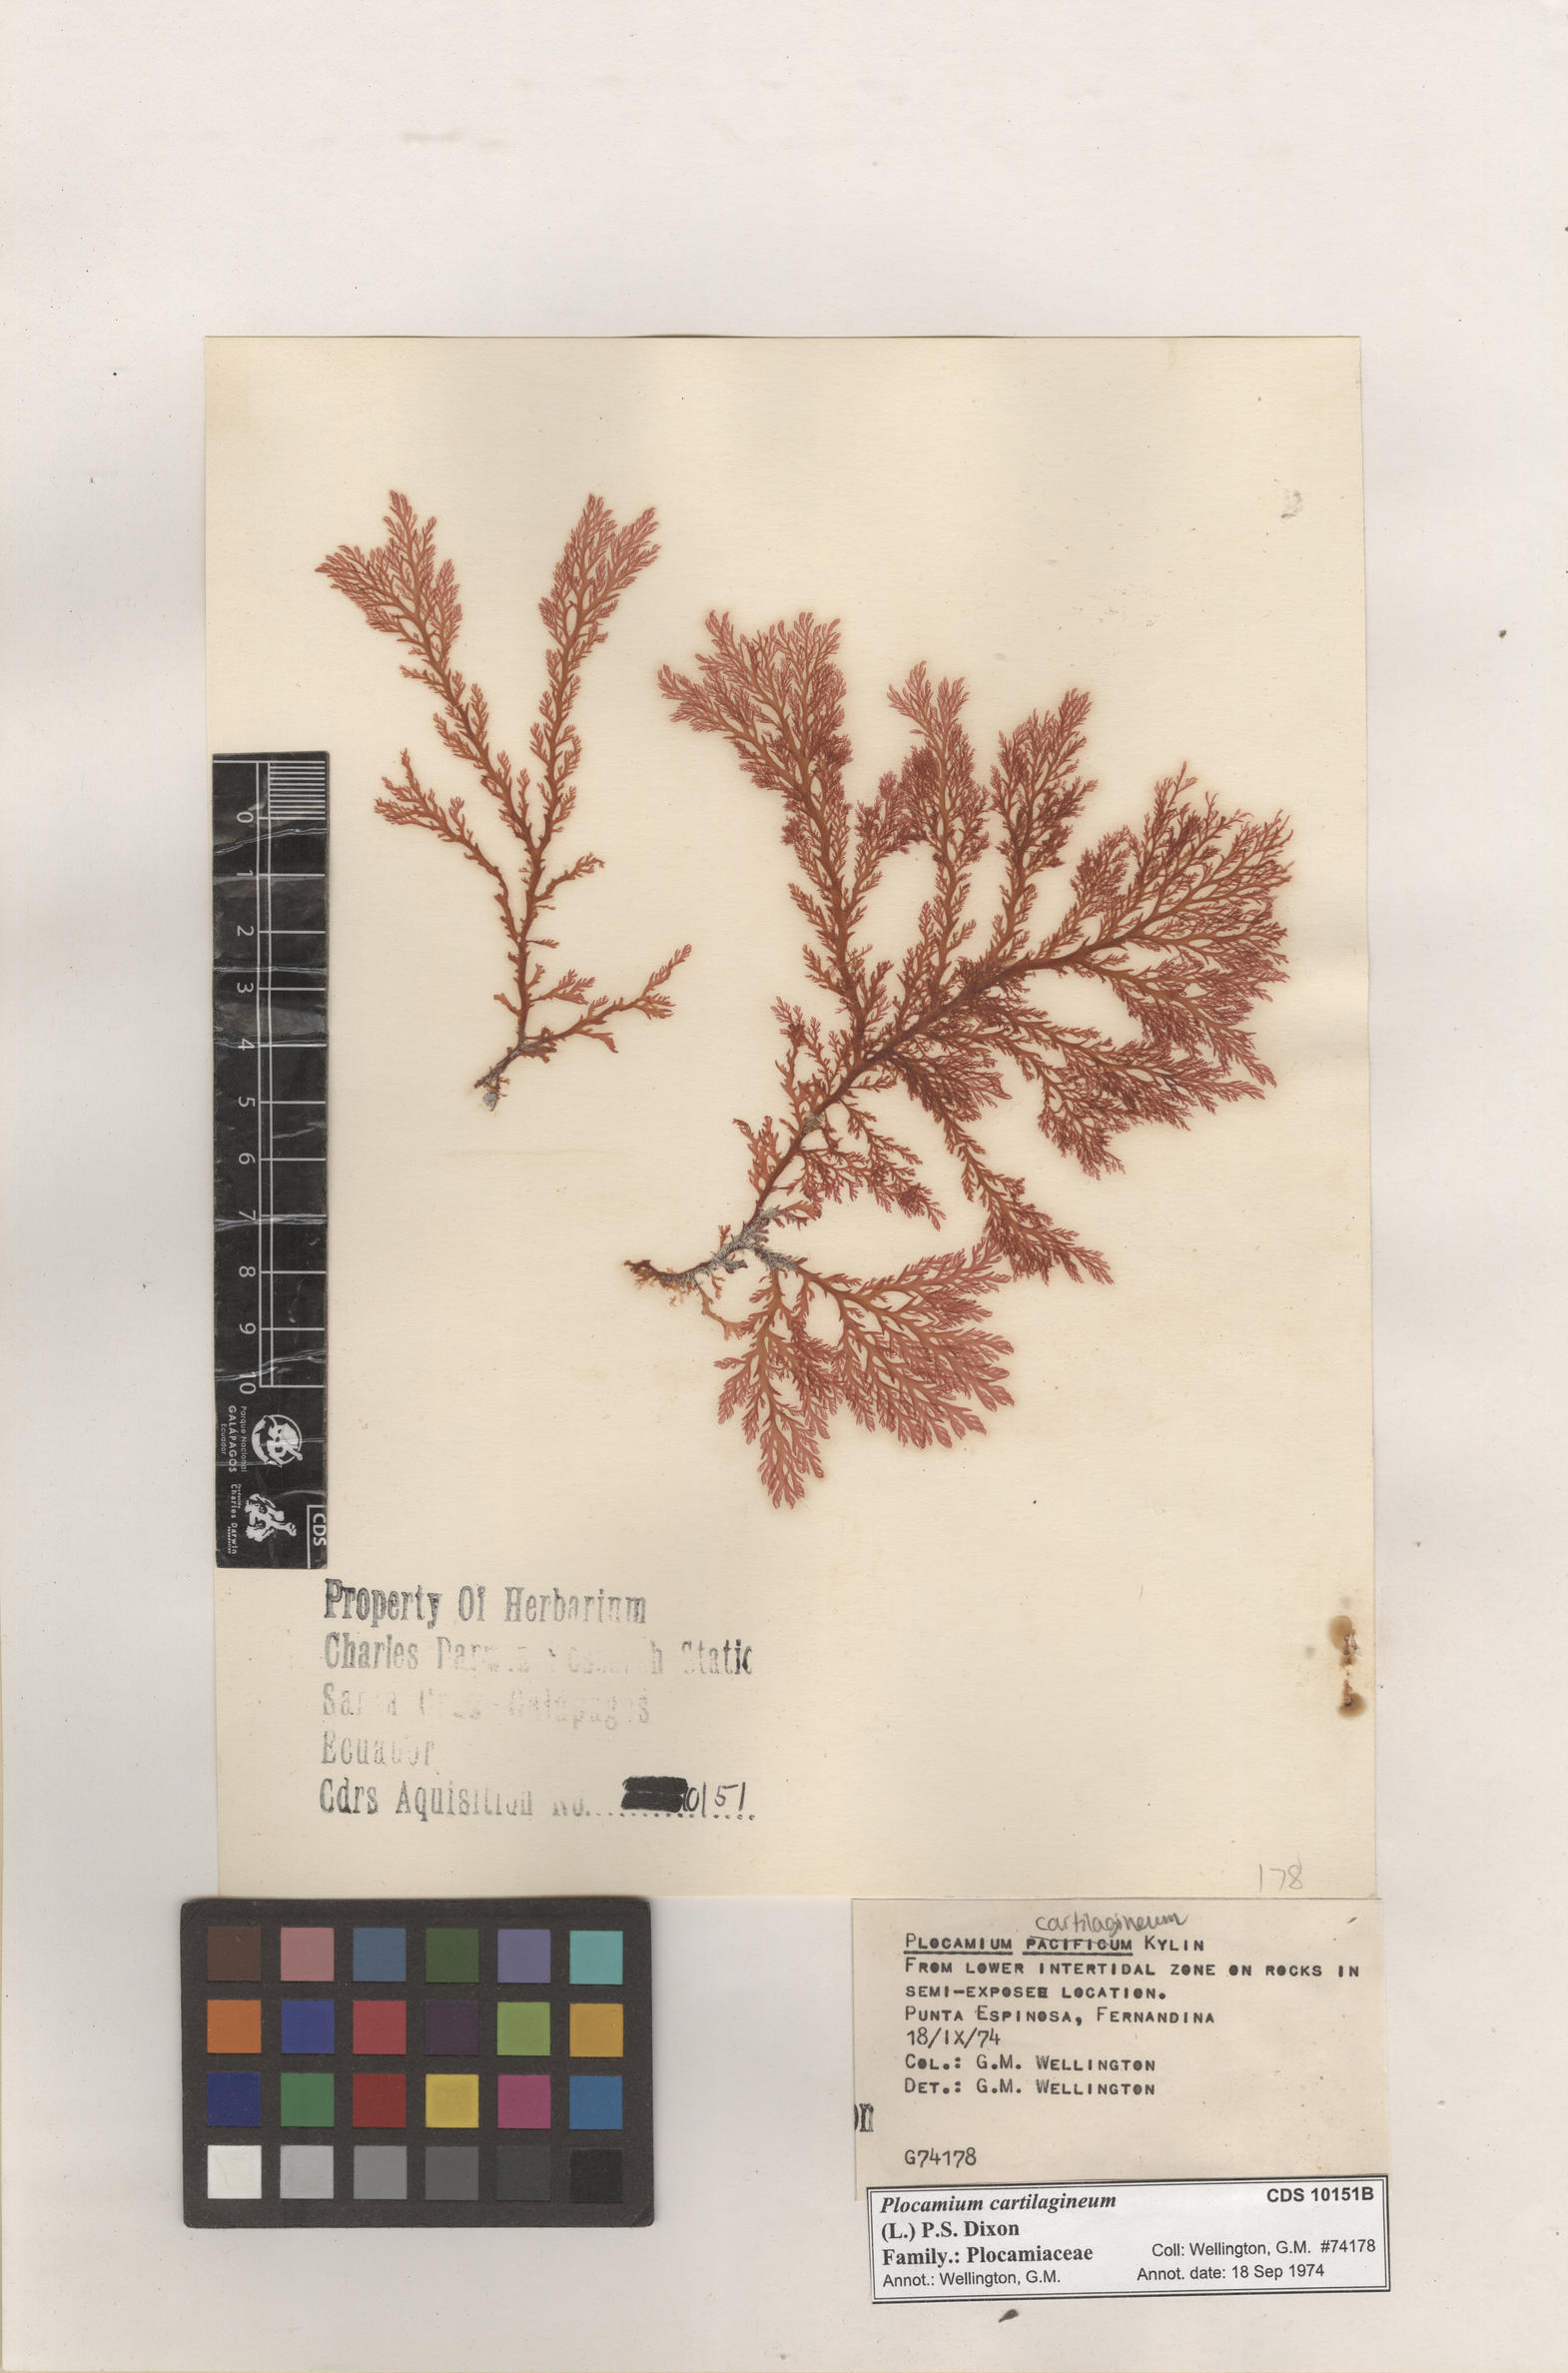  Plocamium cartilagineum , CDS specimen herbarium. Photo: Bravo, L..